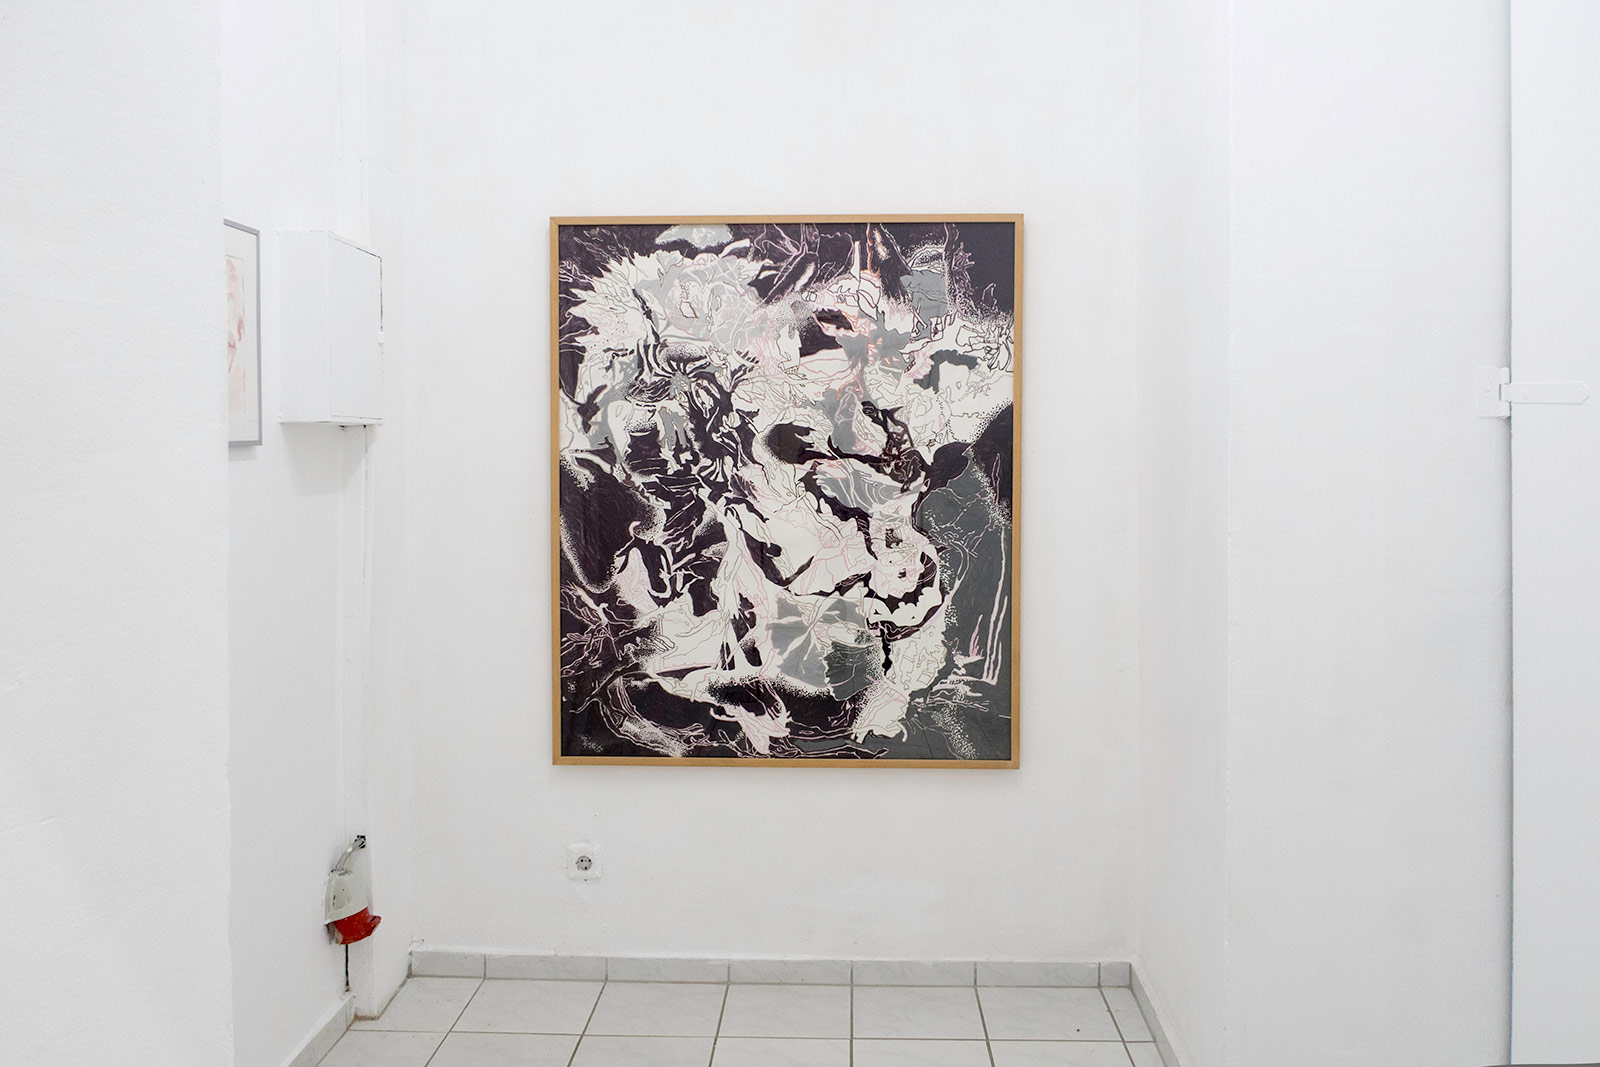 Ausstellung: "Manchmal denke ich, ich könnte malen", Toolbox Art Space Berlin, 2019